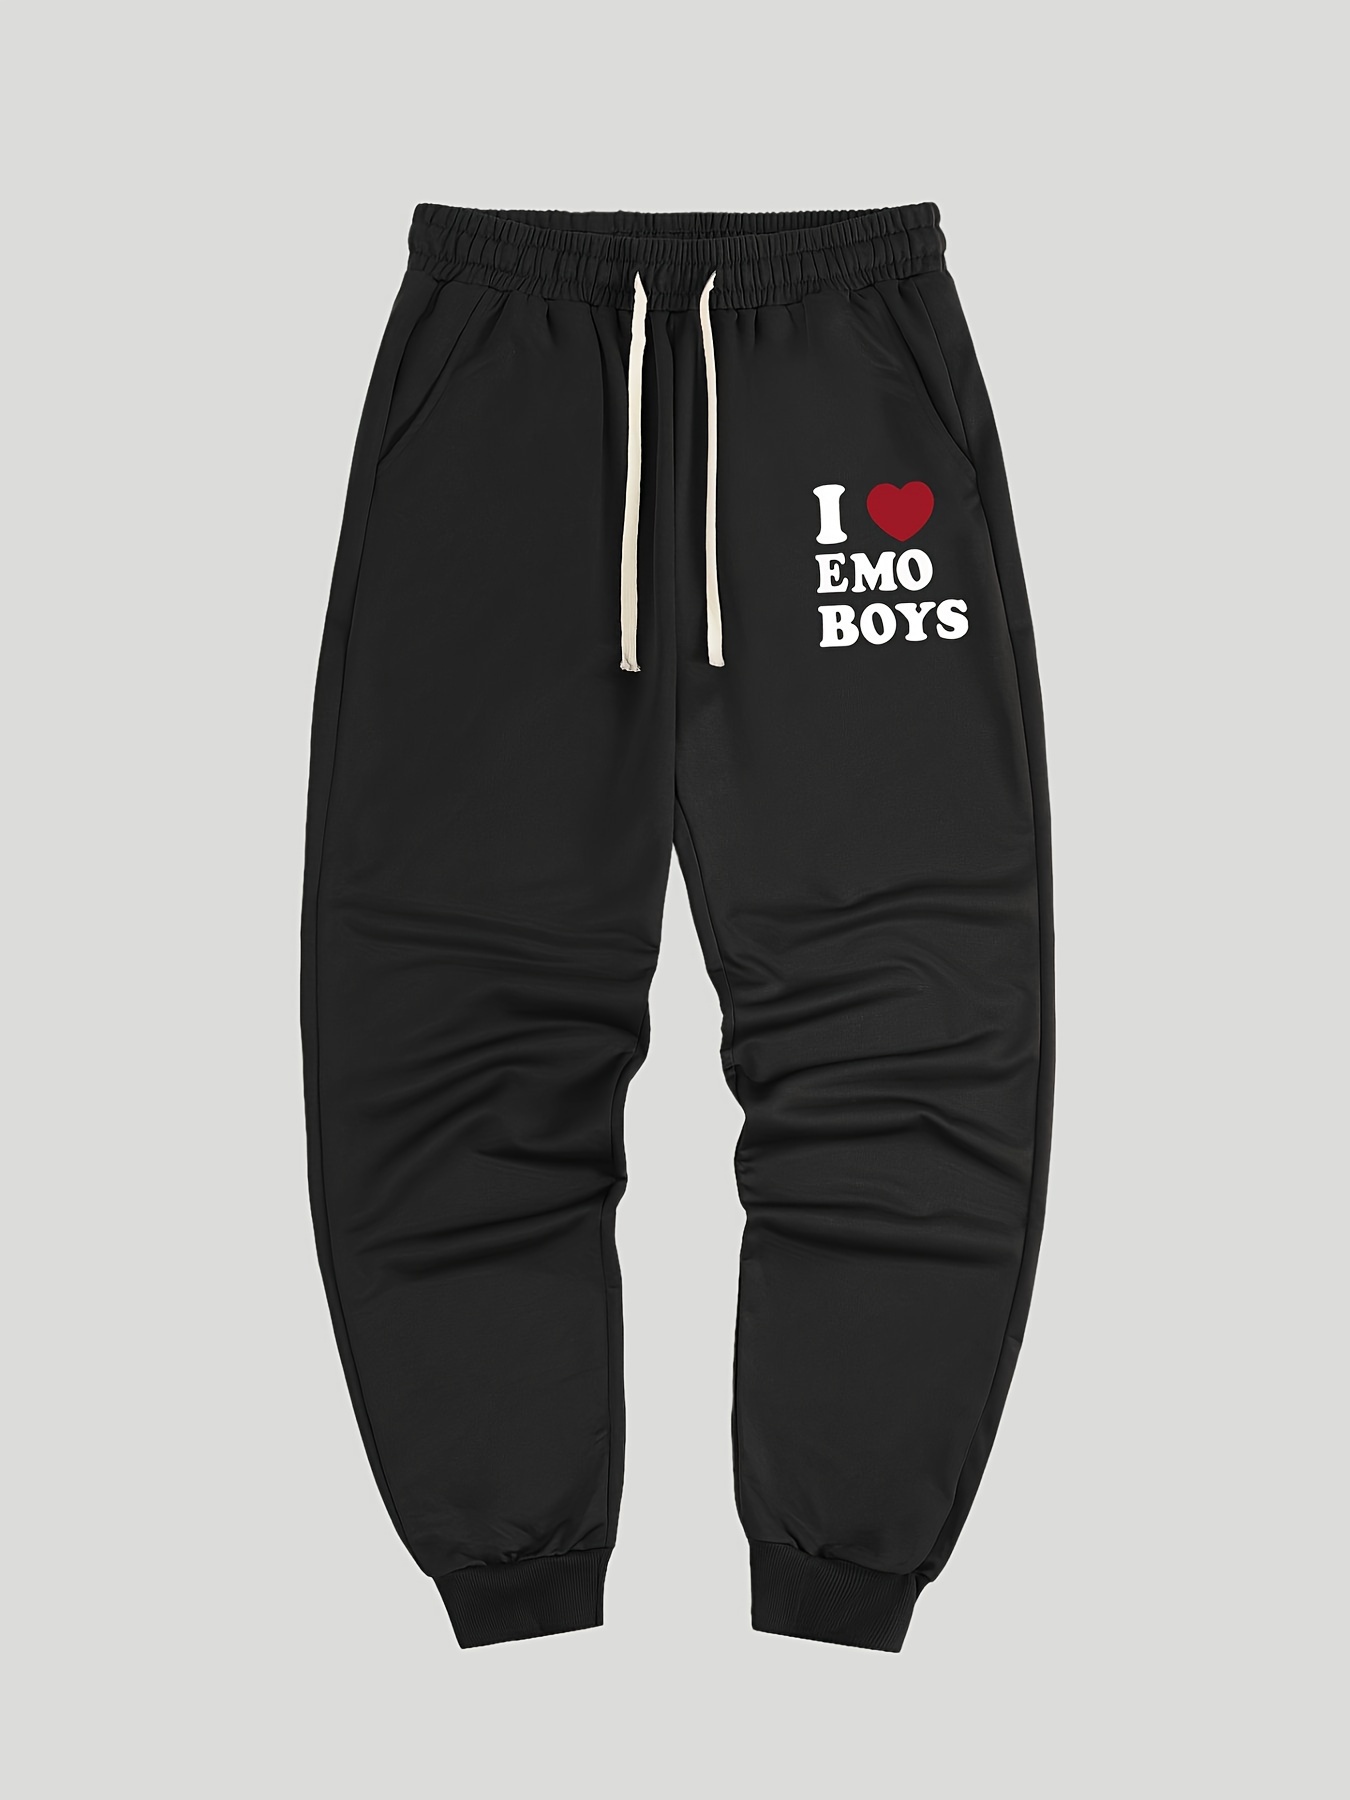 Love Emo Boys Print Men's Pants Drawstring Sweatpants - Temu